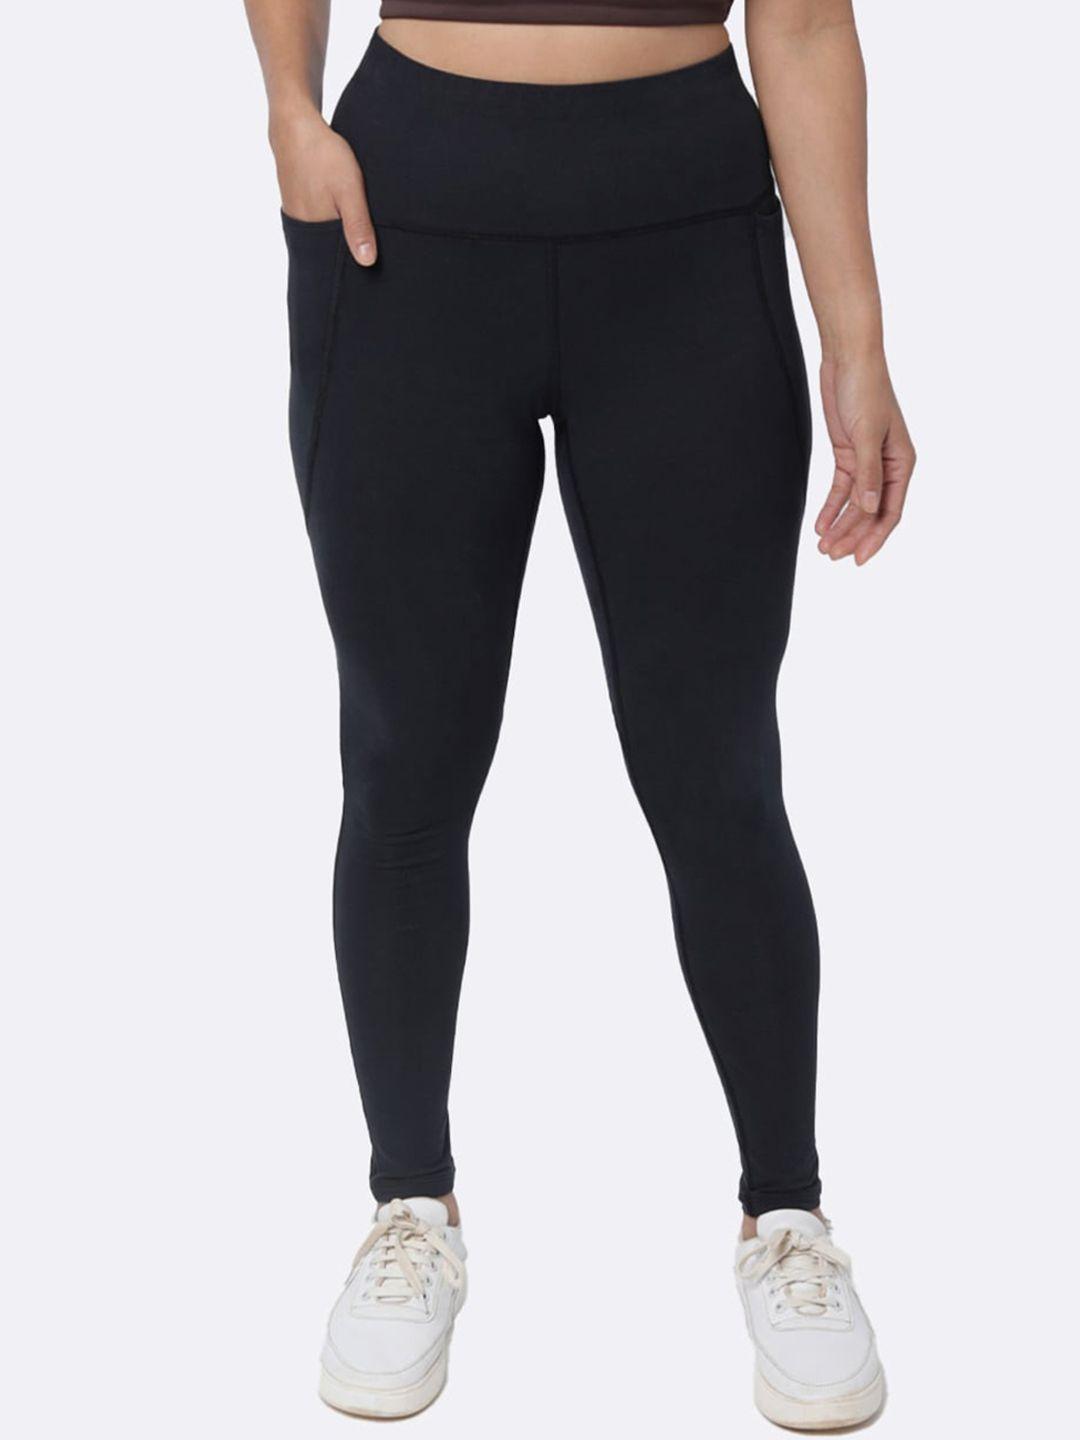 blissclub women black groove in cotton leggings with inner drawstring